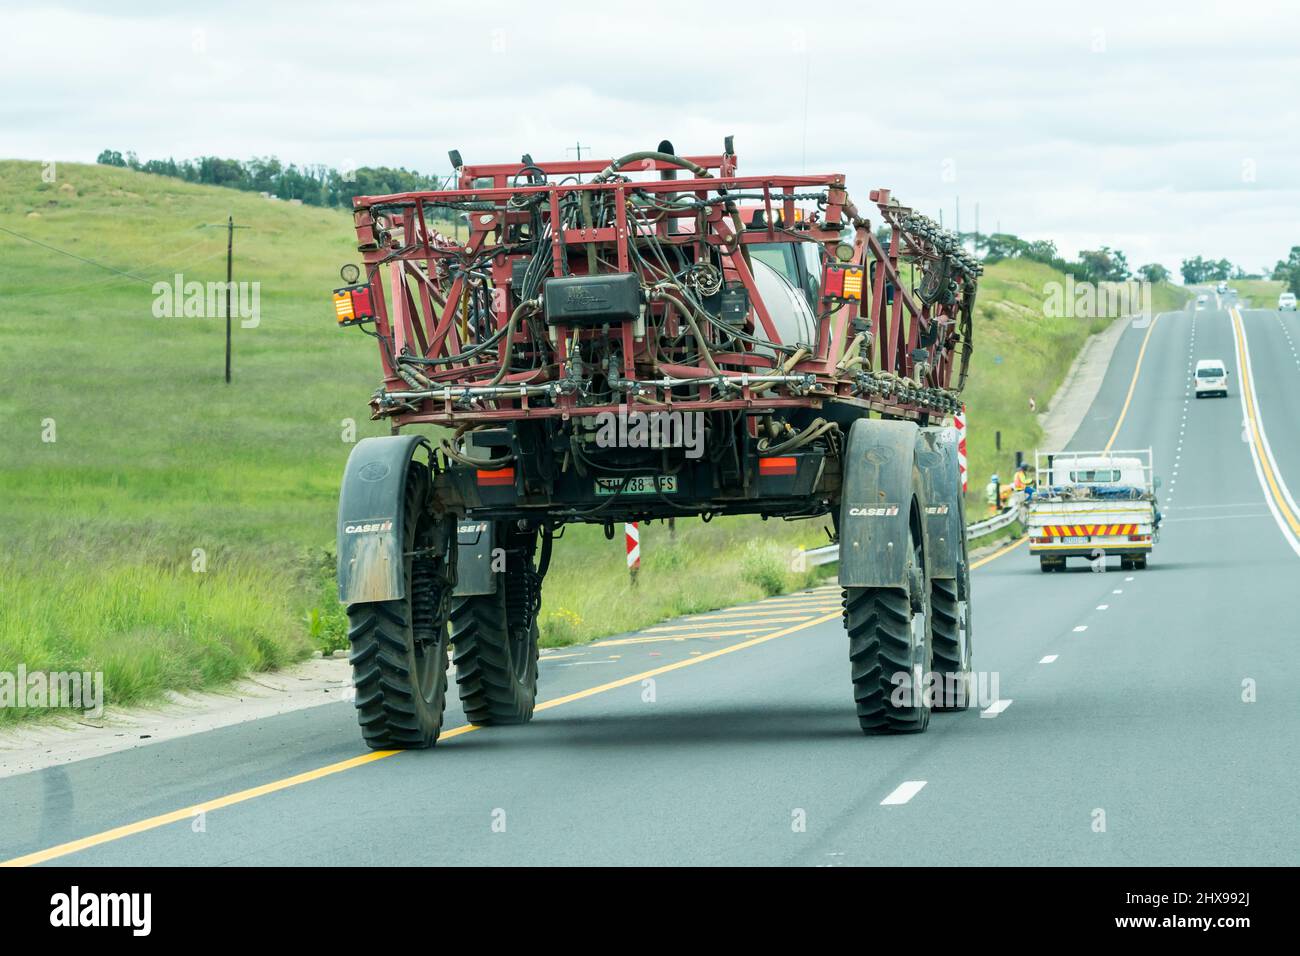 Un véhicule agricole, un pulvérisateur, une machine agricole se déplace le long d'une autoroute dans l'État libre, en Afrique du Sud, dans une zone agricole rurale Banque D'Images